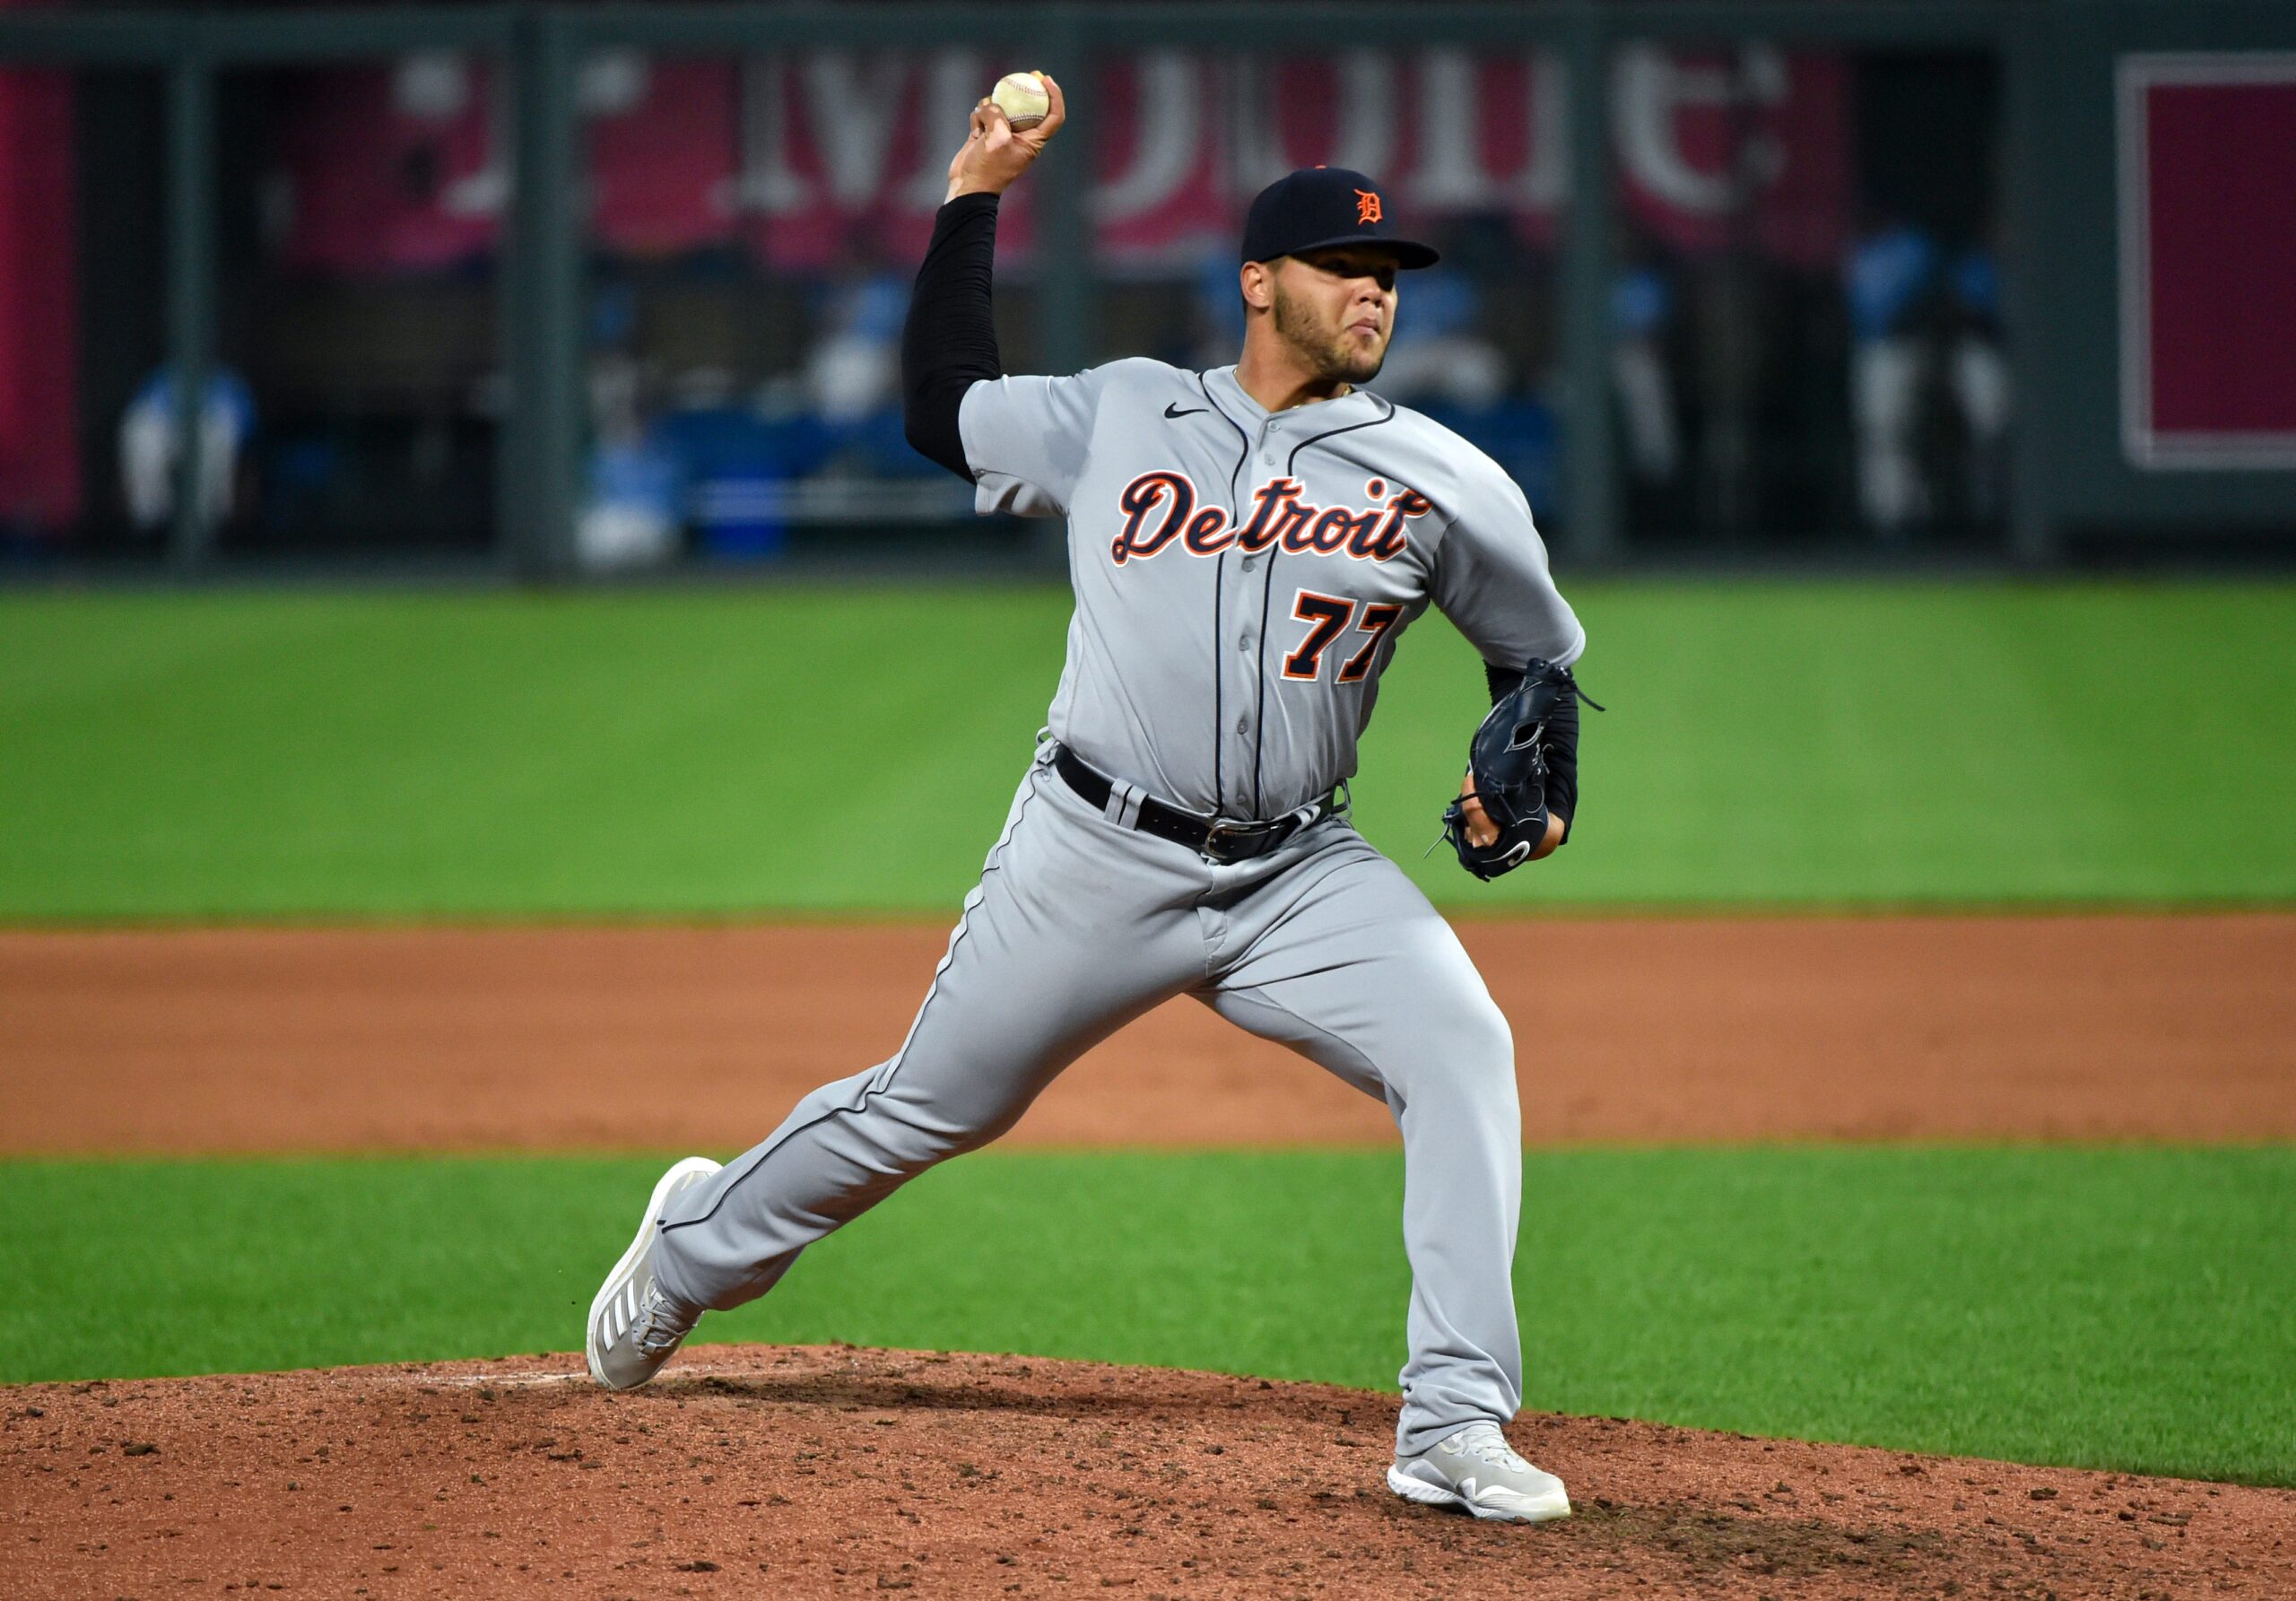 Lanzador puertorriqueño Jiménez mantiene actuación destacada en MLB